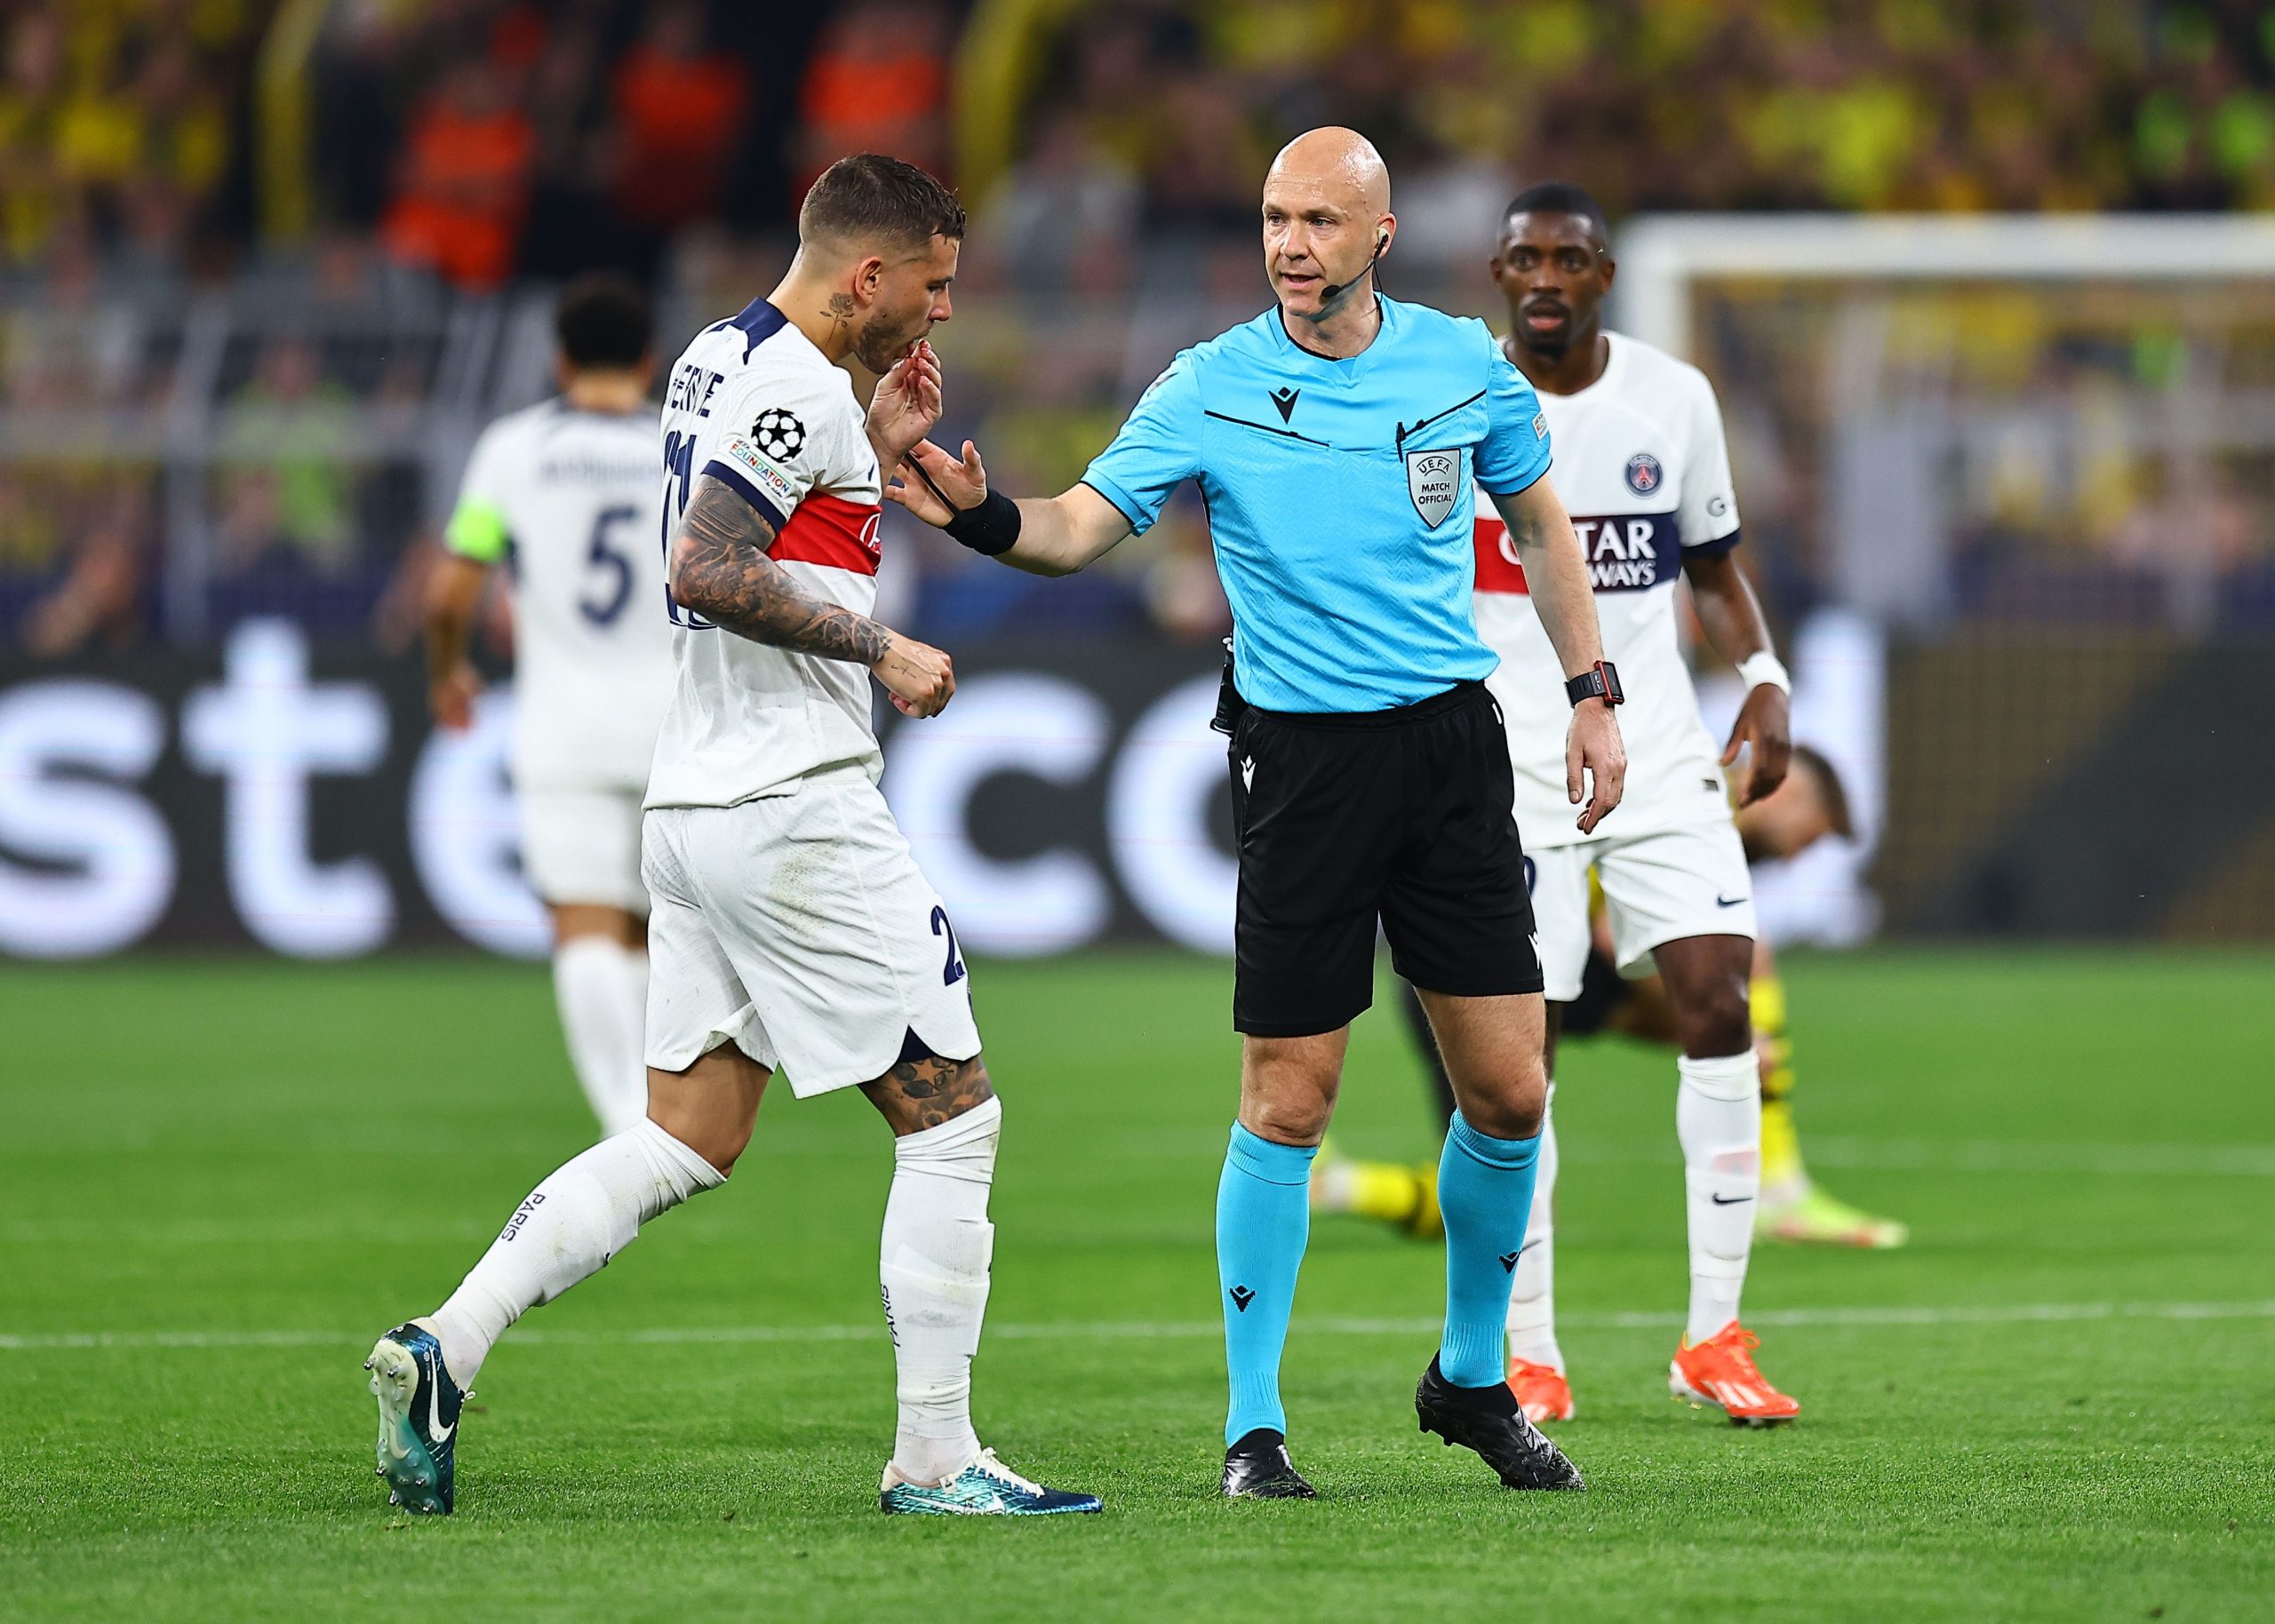 Taylor también arbitró el primer partido de las semifinales de la Liga de Campeones entre Paris Saint-Germain y Borussia Dortmund